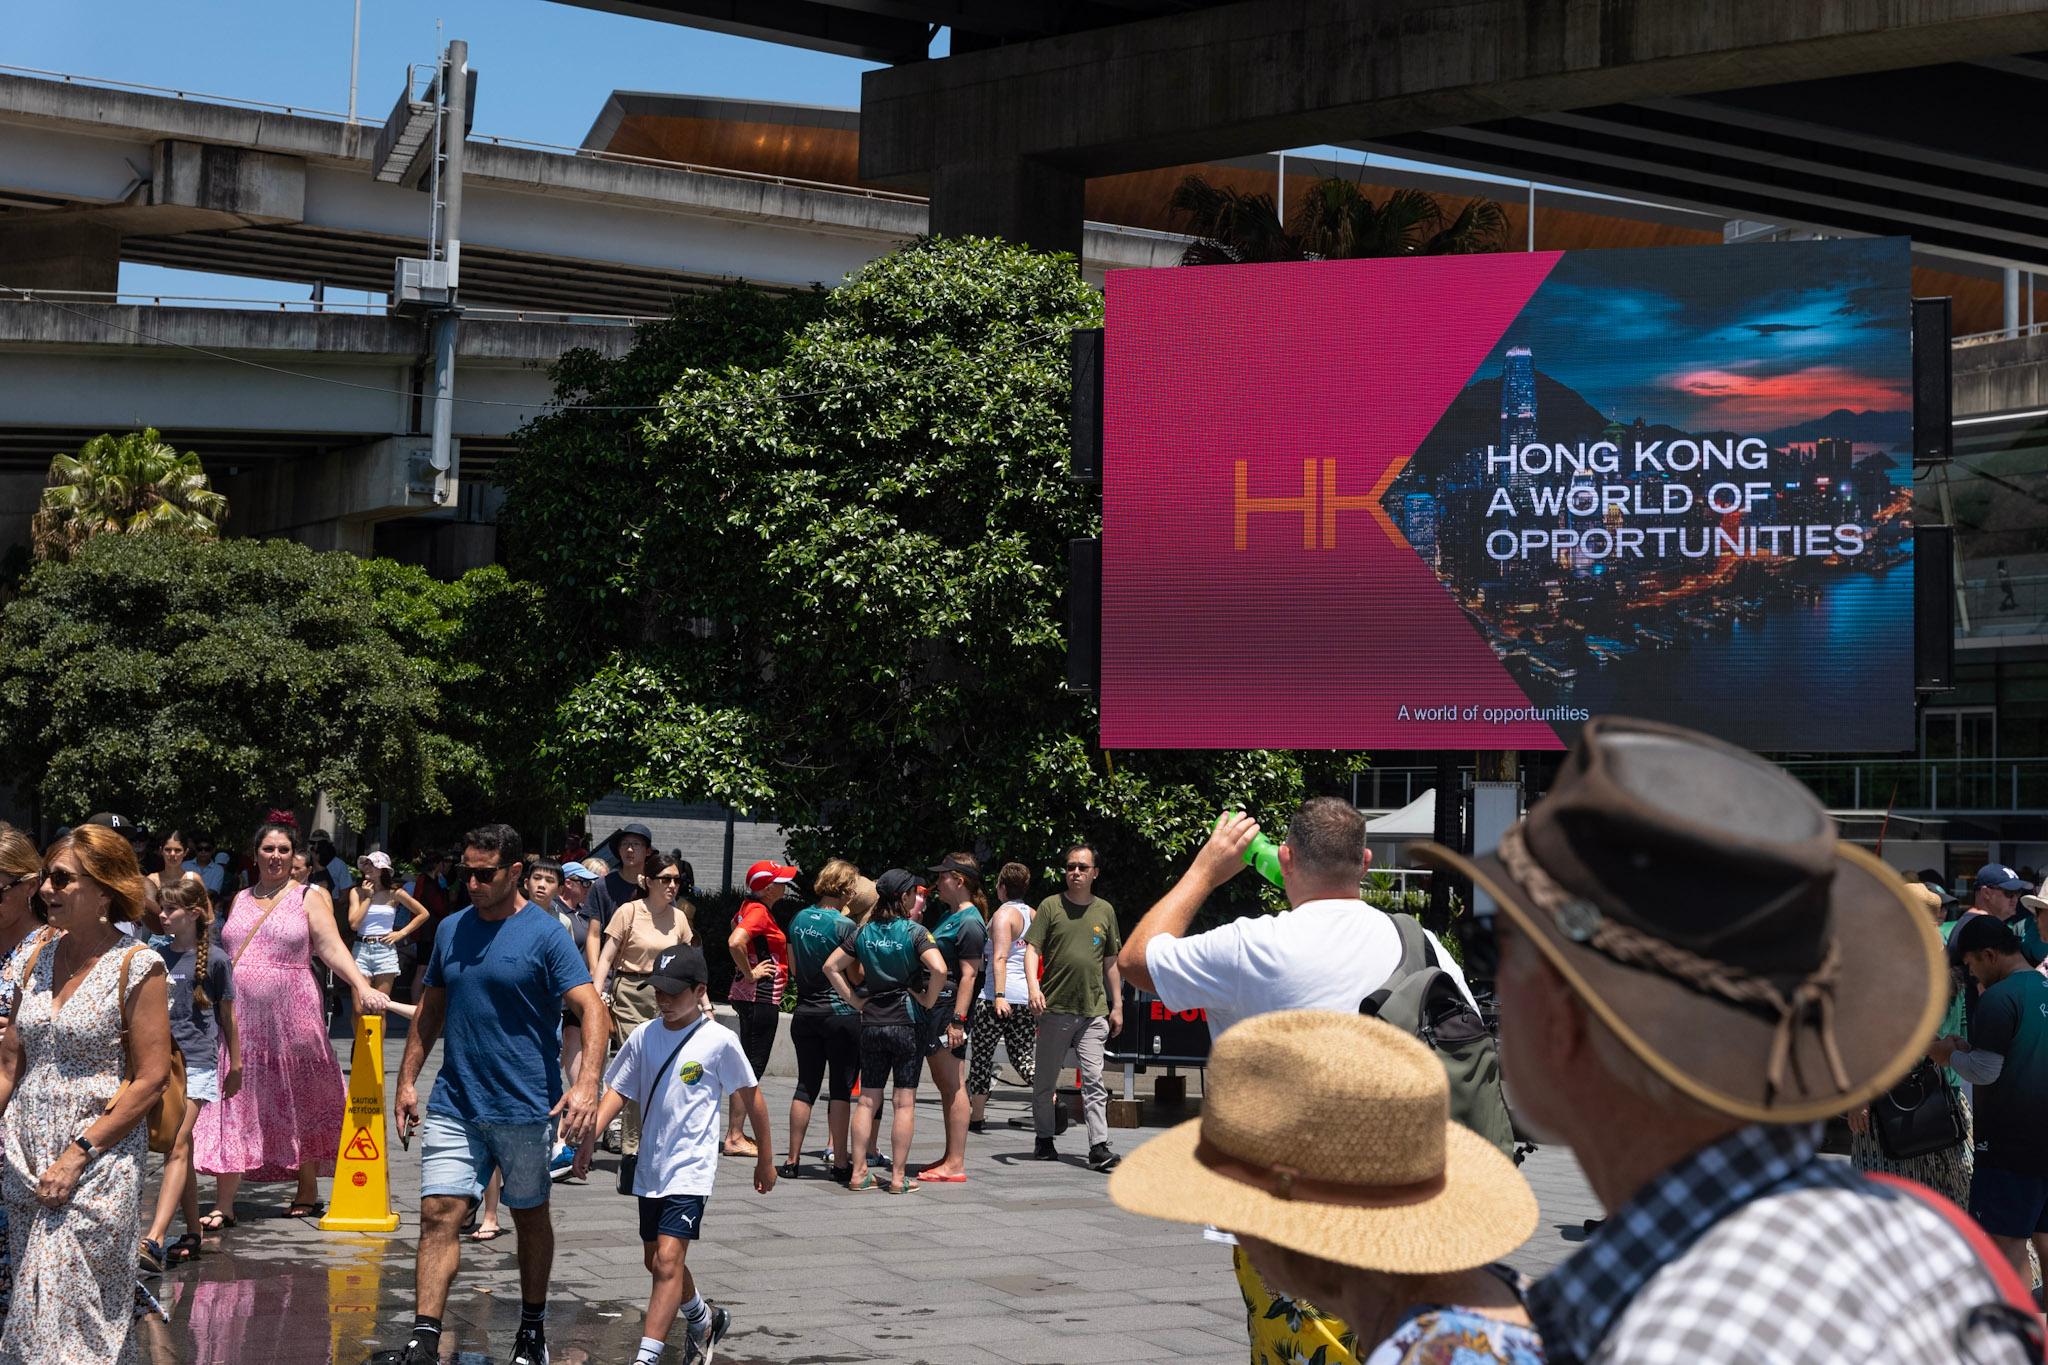 香港駐悉尼經濟貿易辦事處參加一月二十八日及二十九日在澳洲悉尼市舉行的悉尼農曆節龍舟競渡。圖示「香港品牌」短片在龍舟競渡期間於達令港播出，以推廣香港的最新發展和機遇。